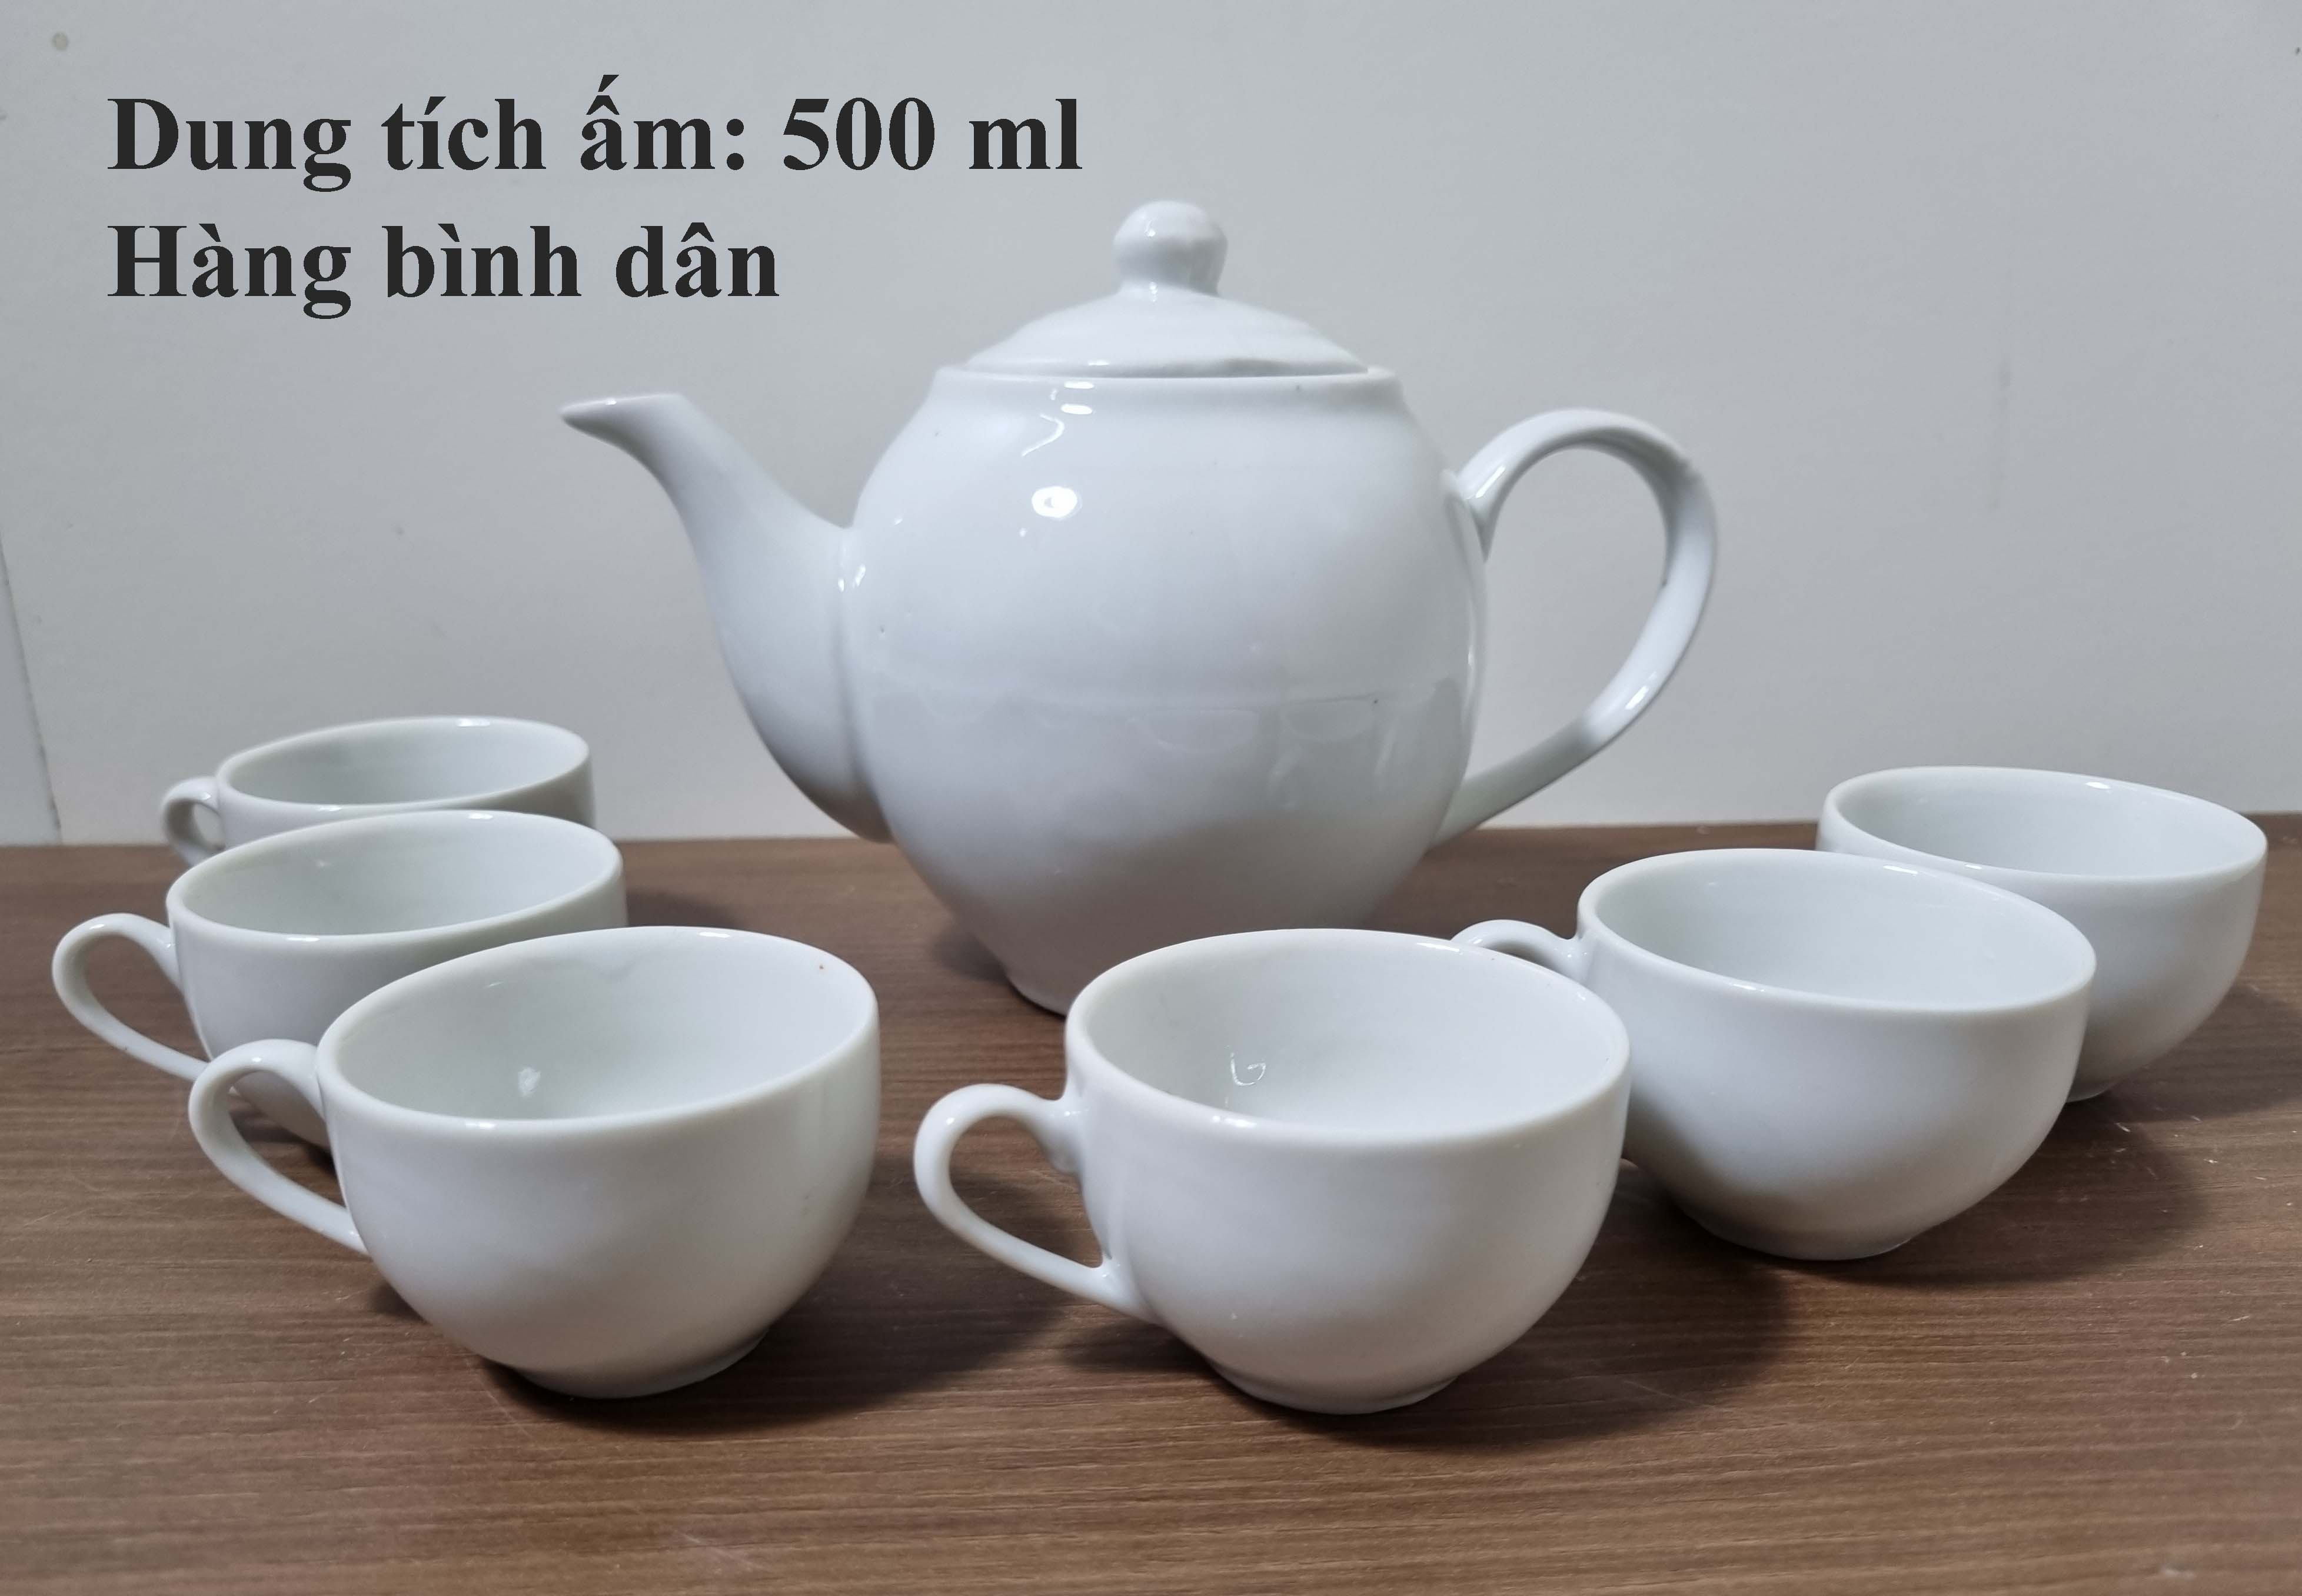 Bộ trà/bộ ấm chén trắng, hàng bình dân, không đĩa kê, dung tích 500 ml